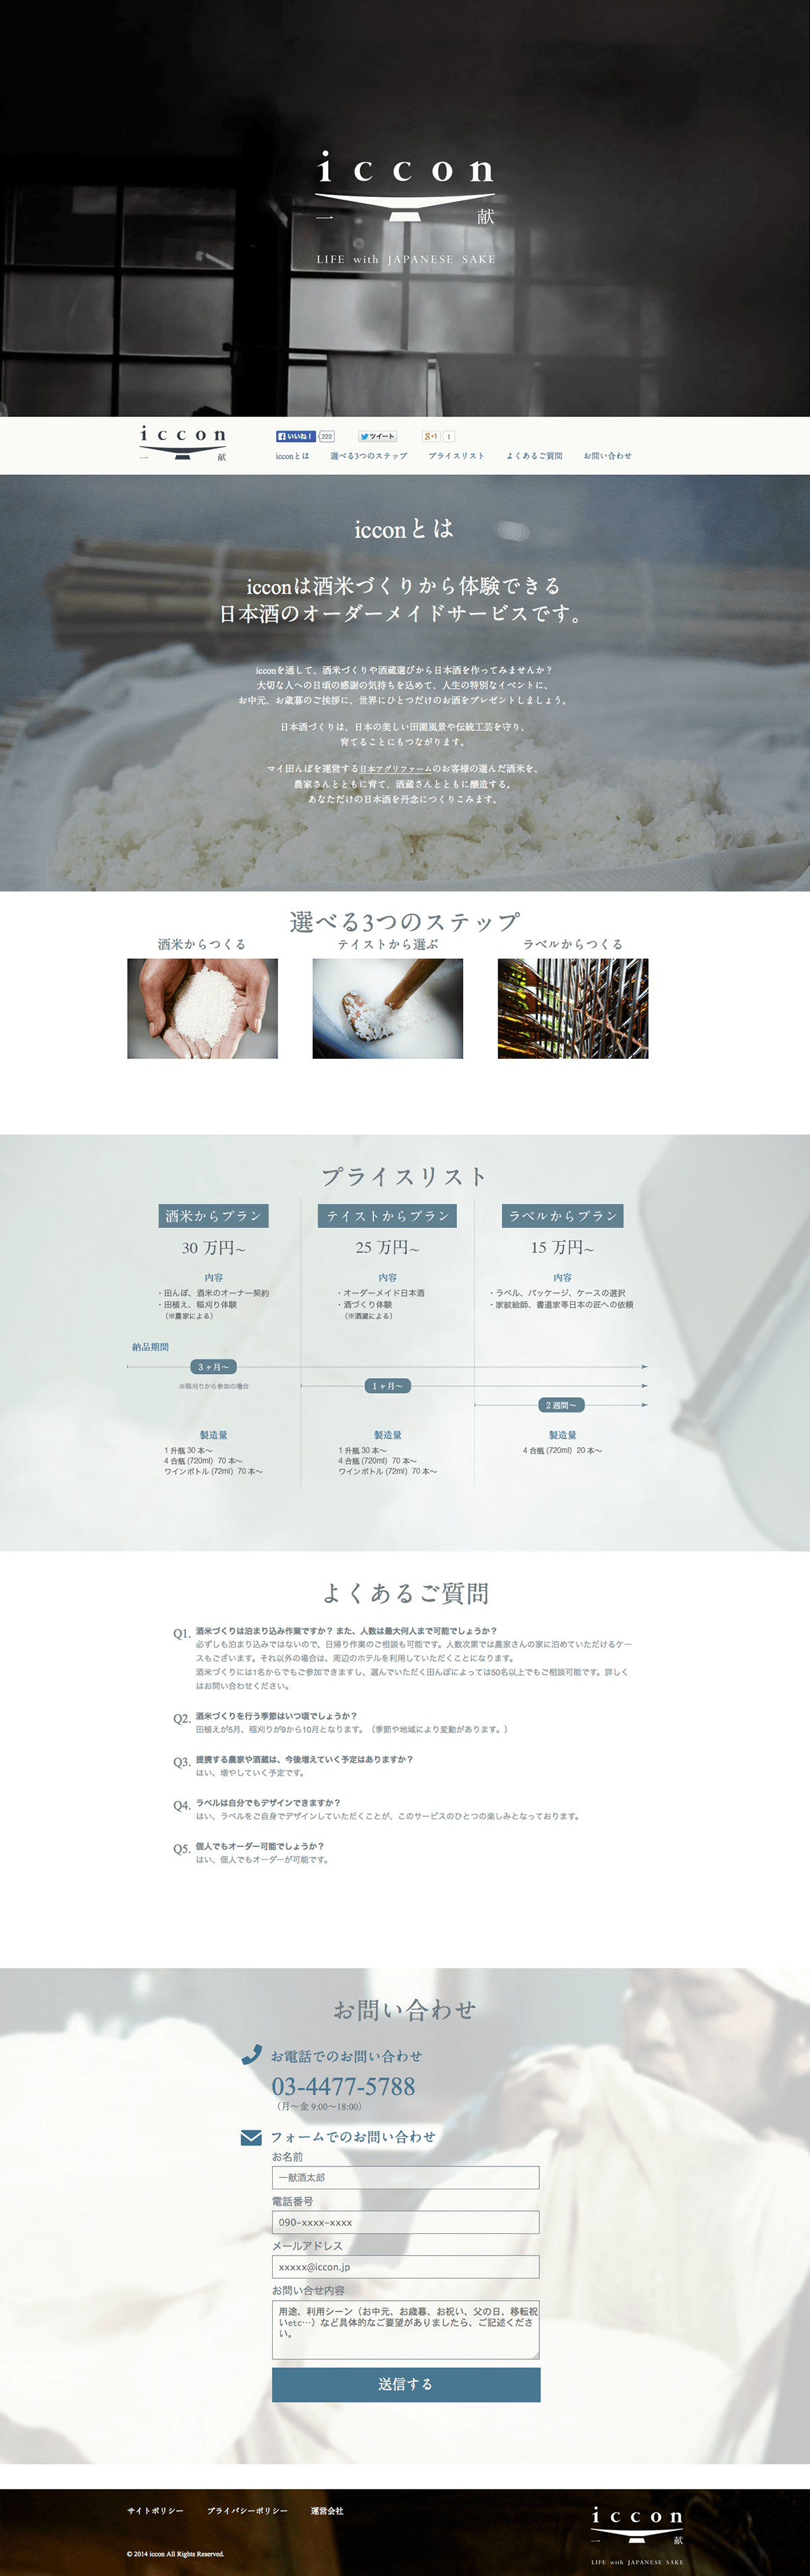 iccon---一献--日本酒のオーダーメイドサービス (1)